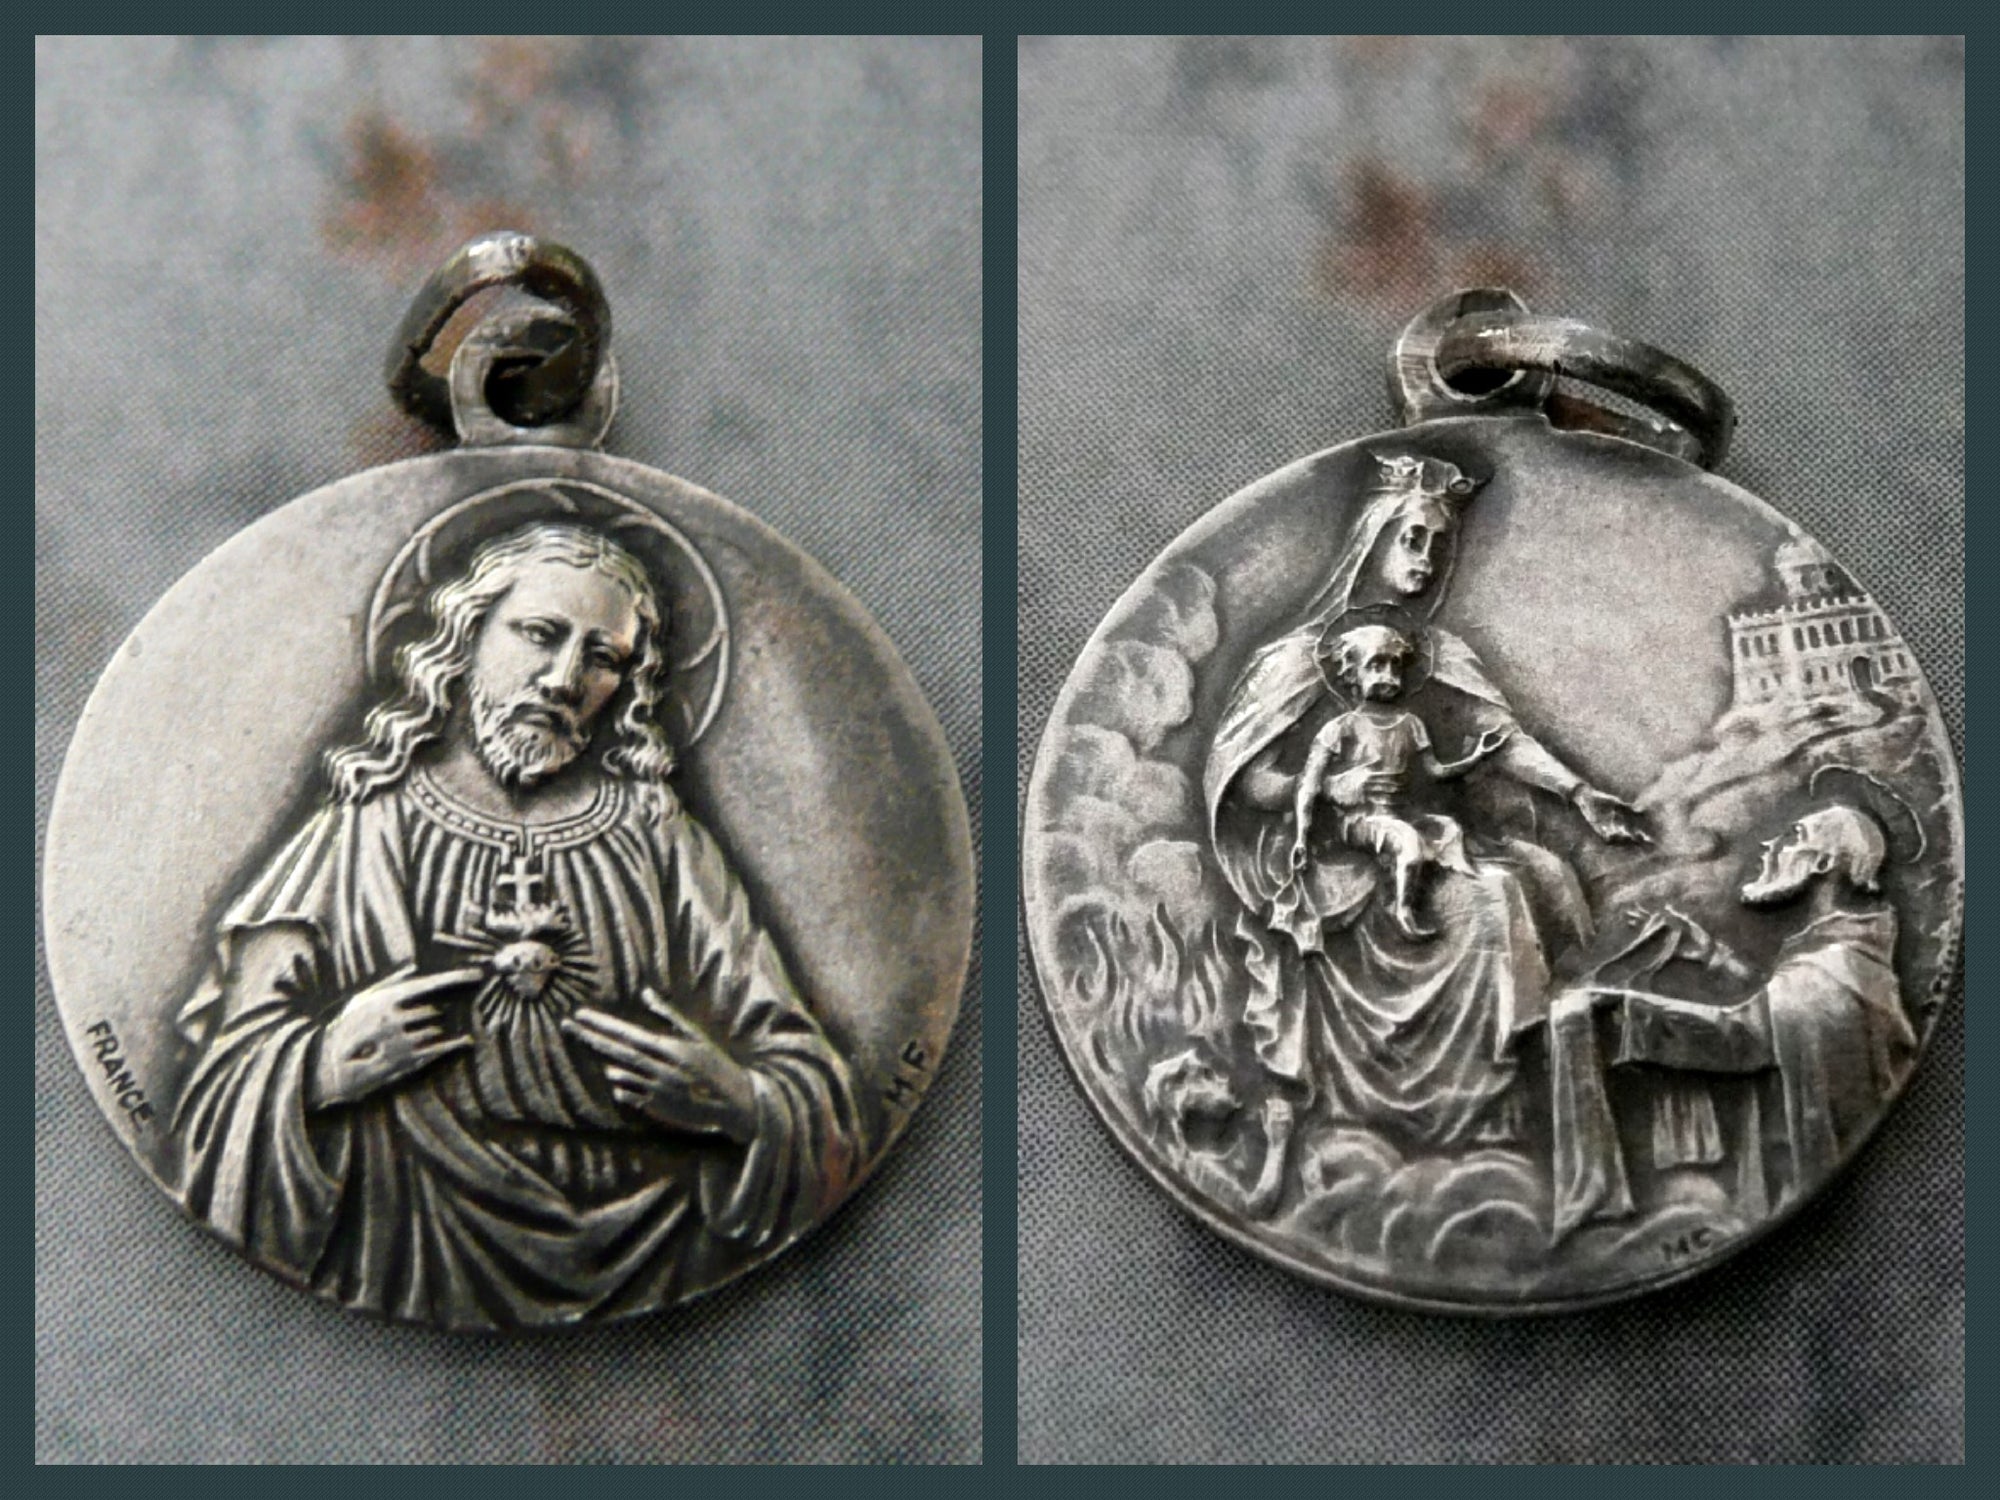 Vintage French Silver Scapular Medal, Sacred Heart of Jesus